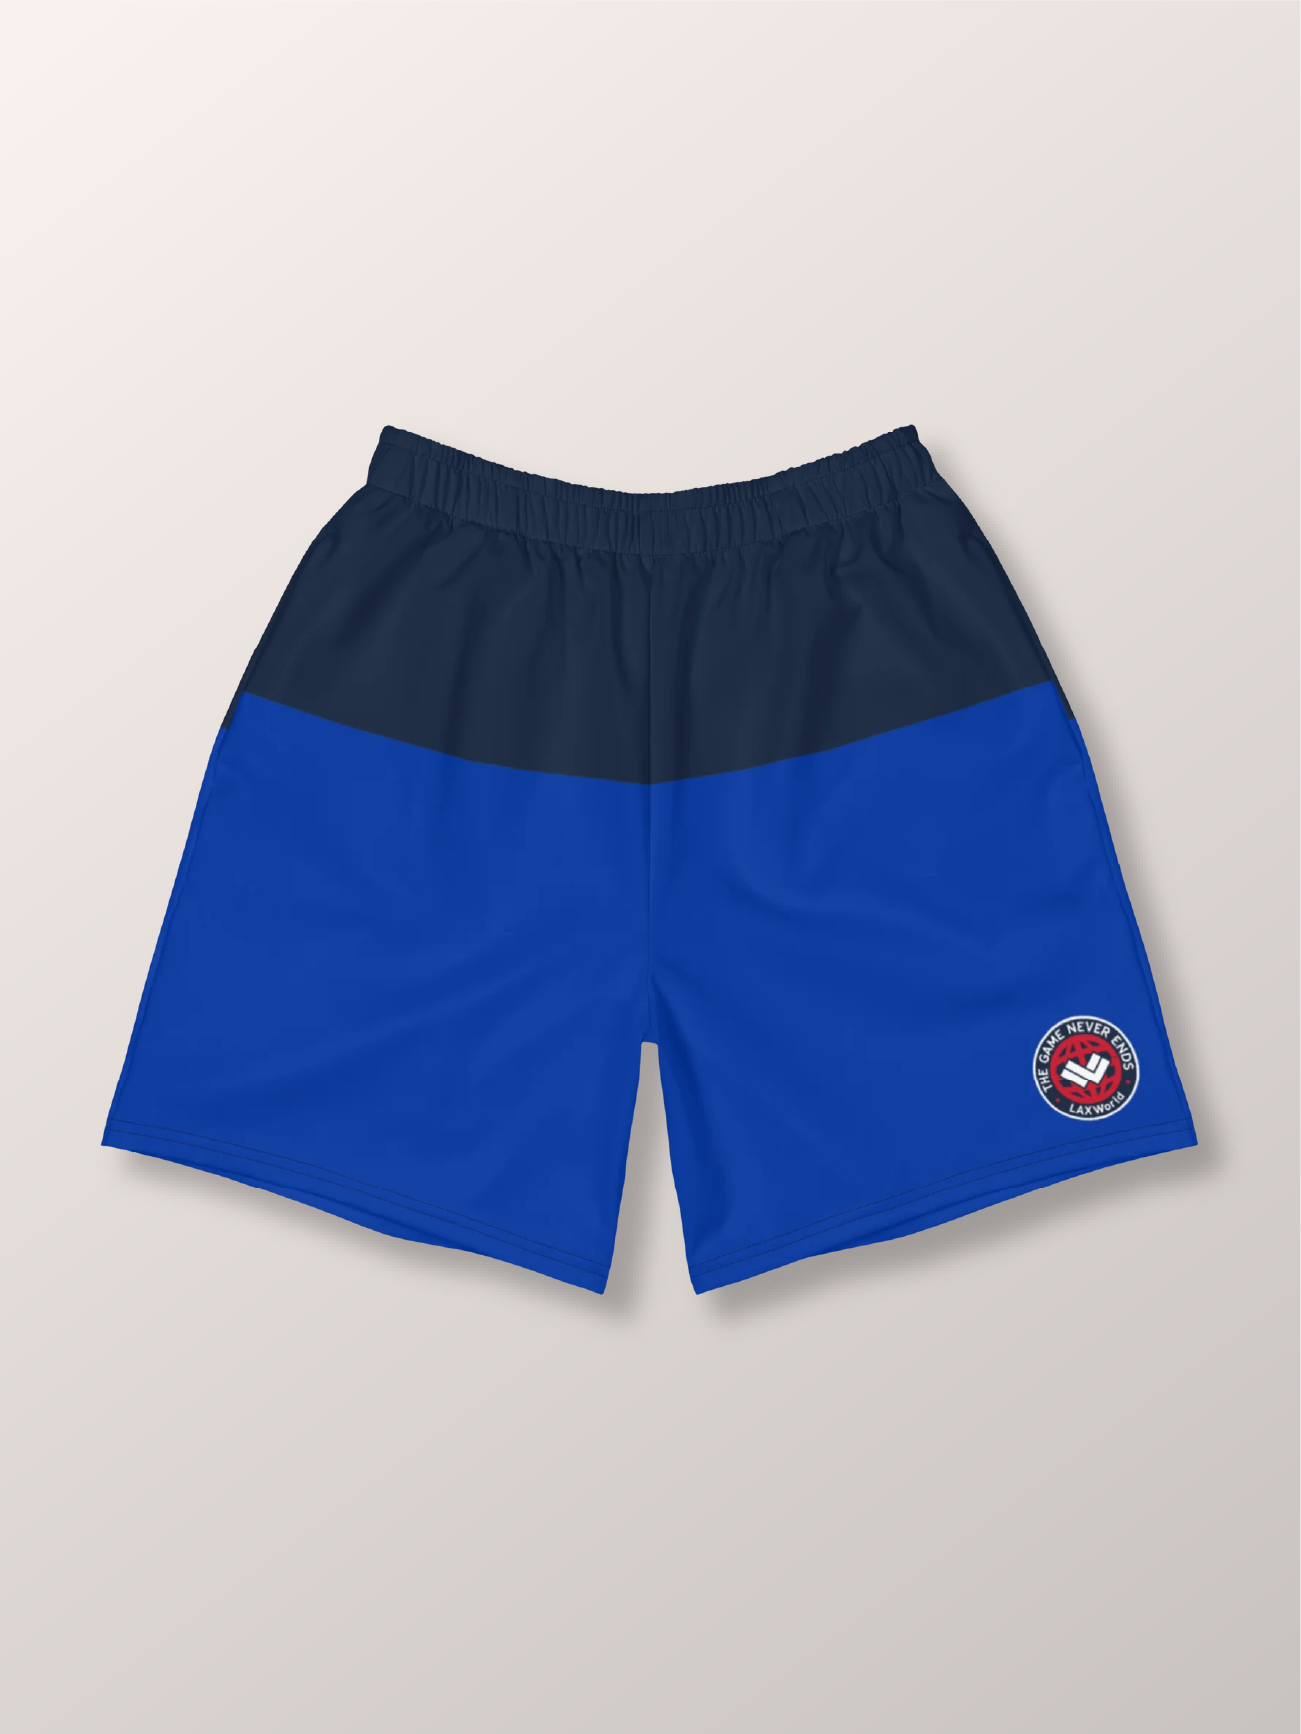 Premium Creator’s Royal Blue Athletic Lacrosse Short - Front 